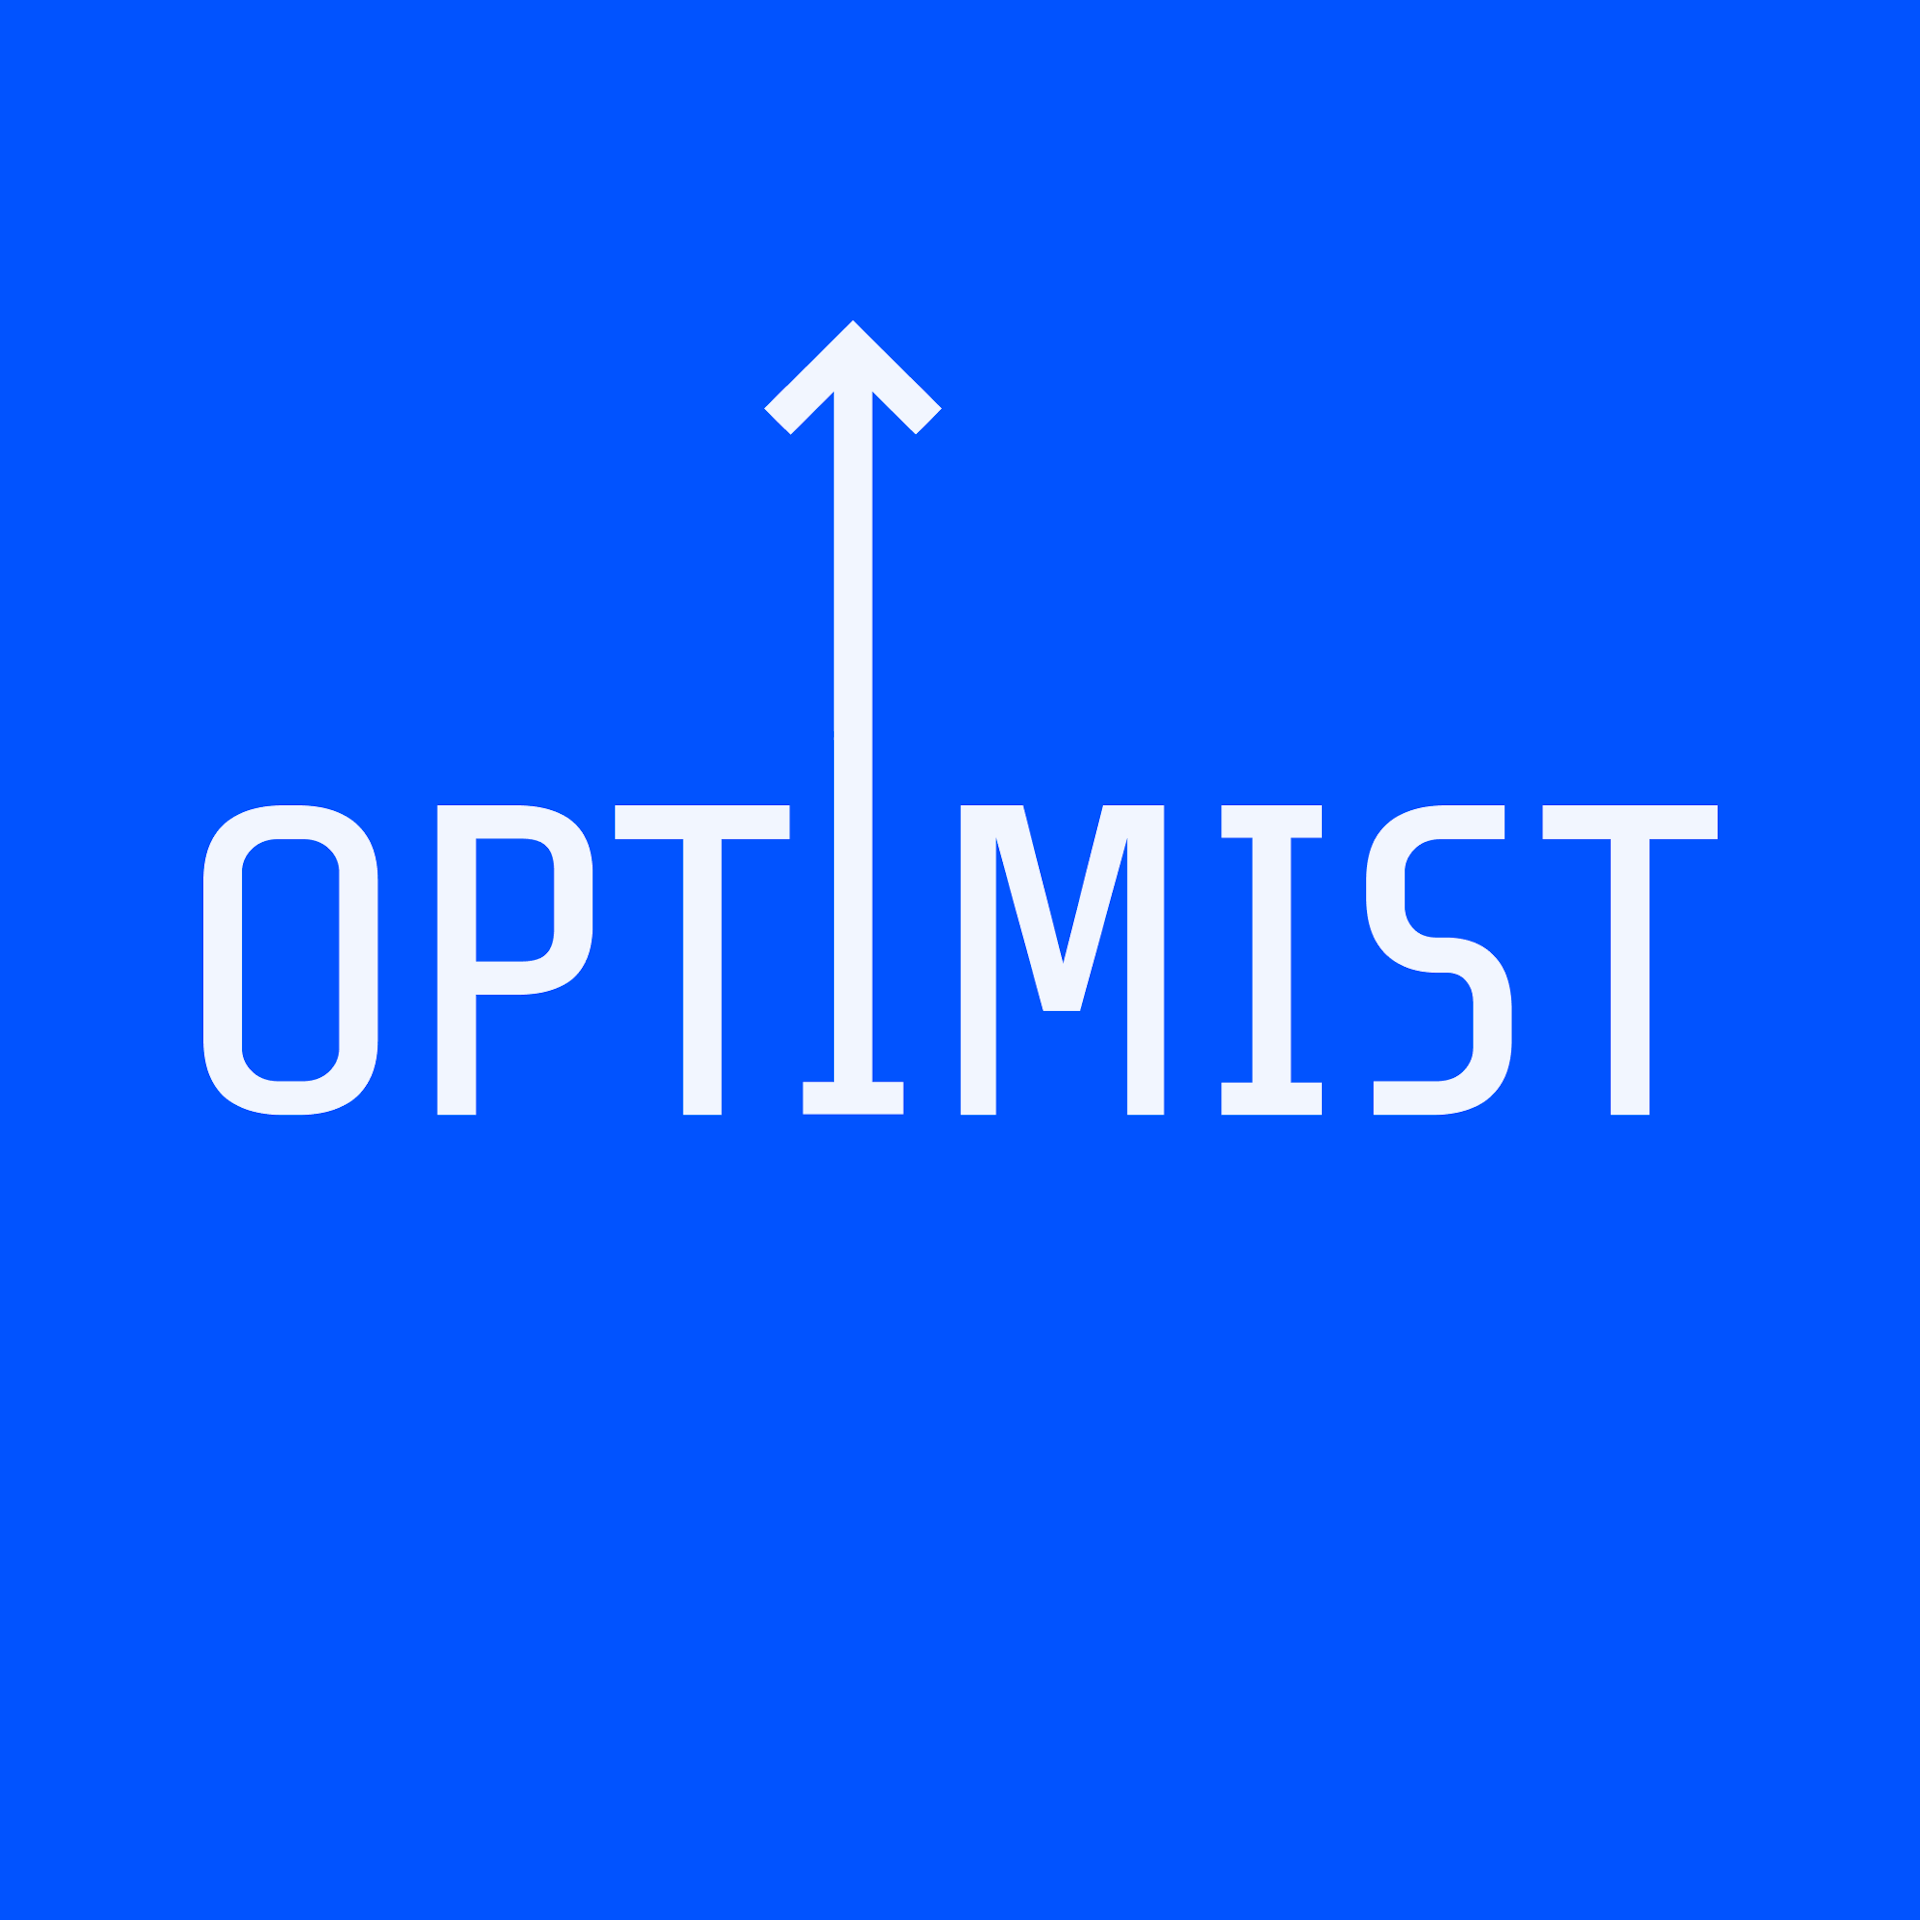 based optimist ↑